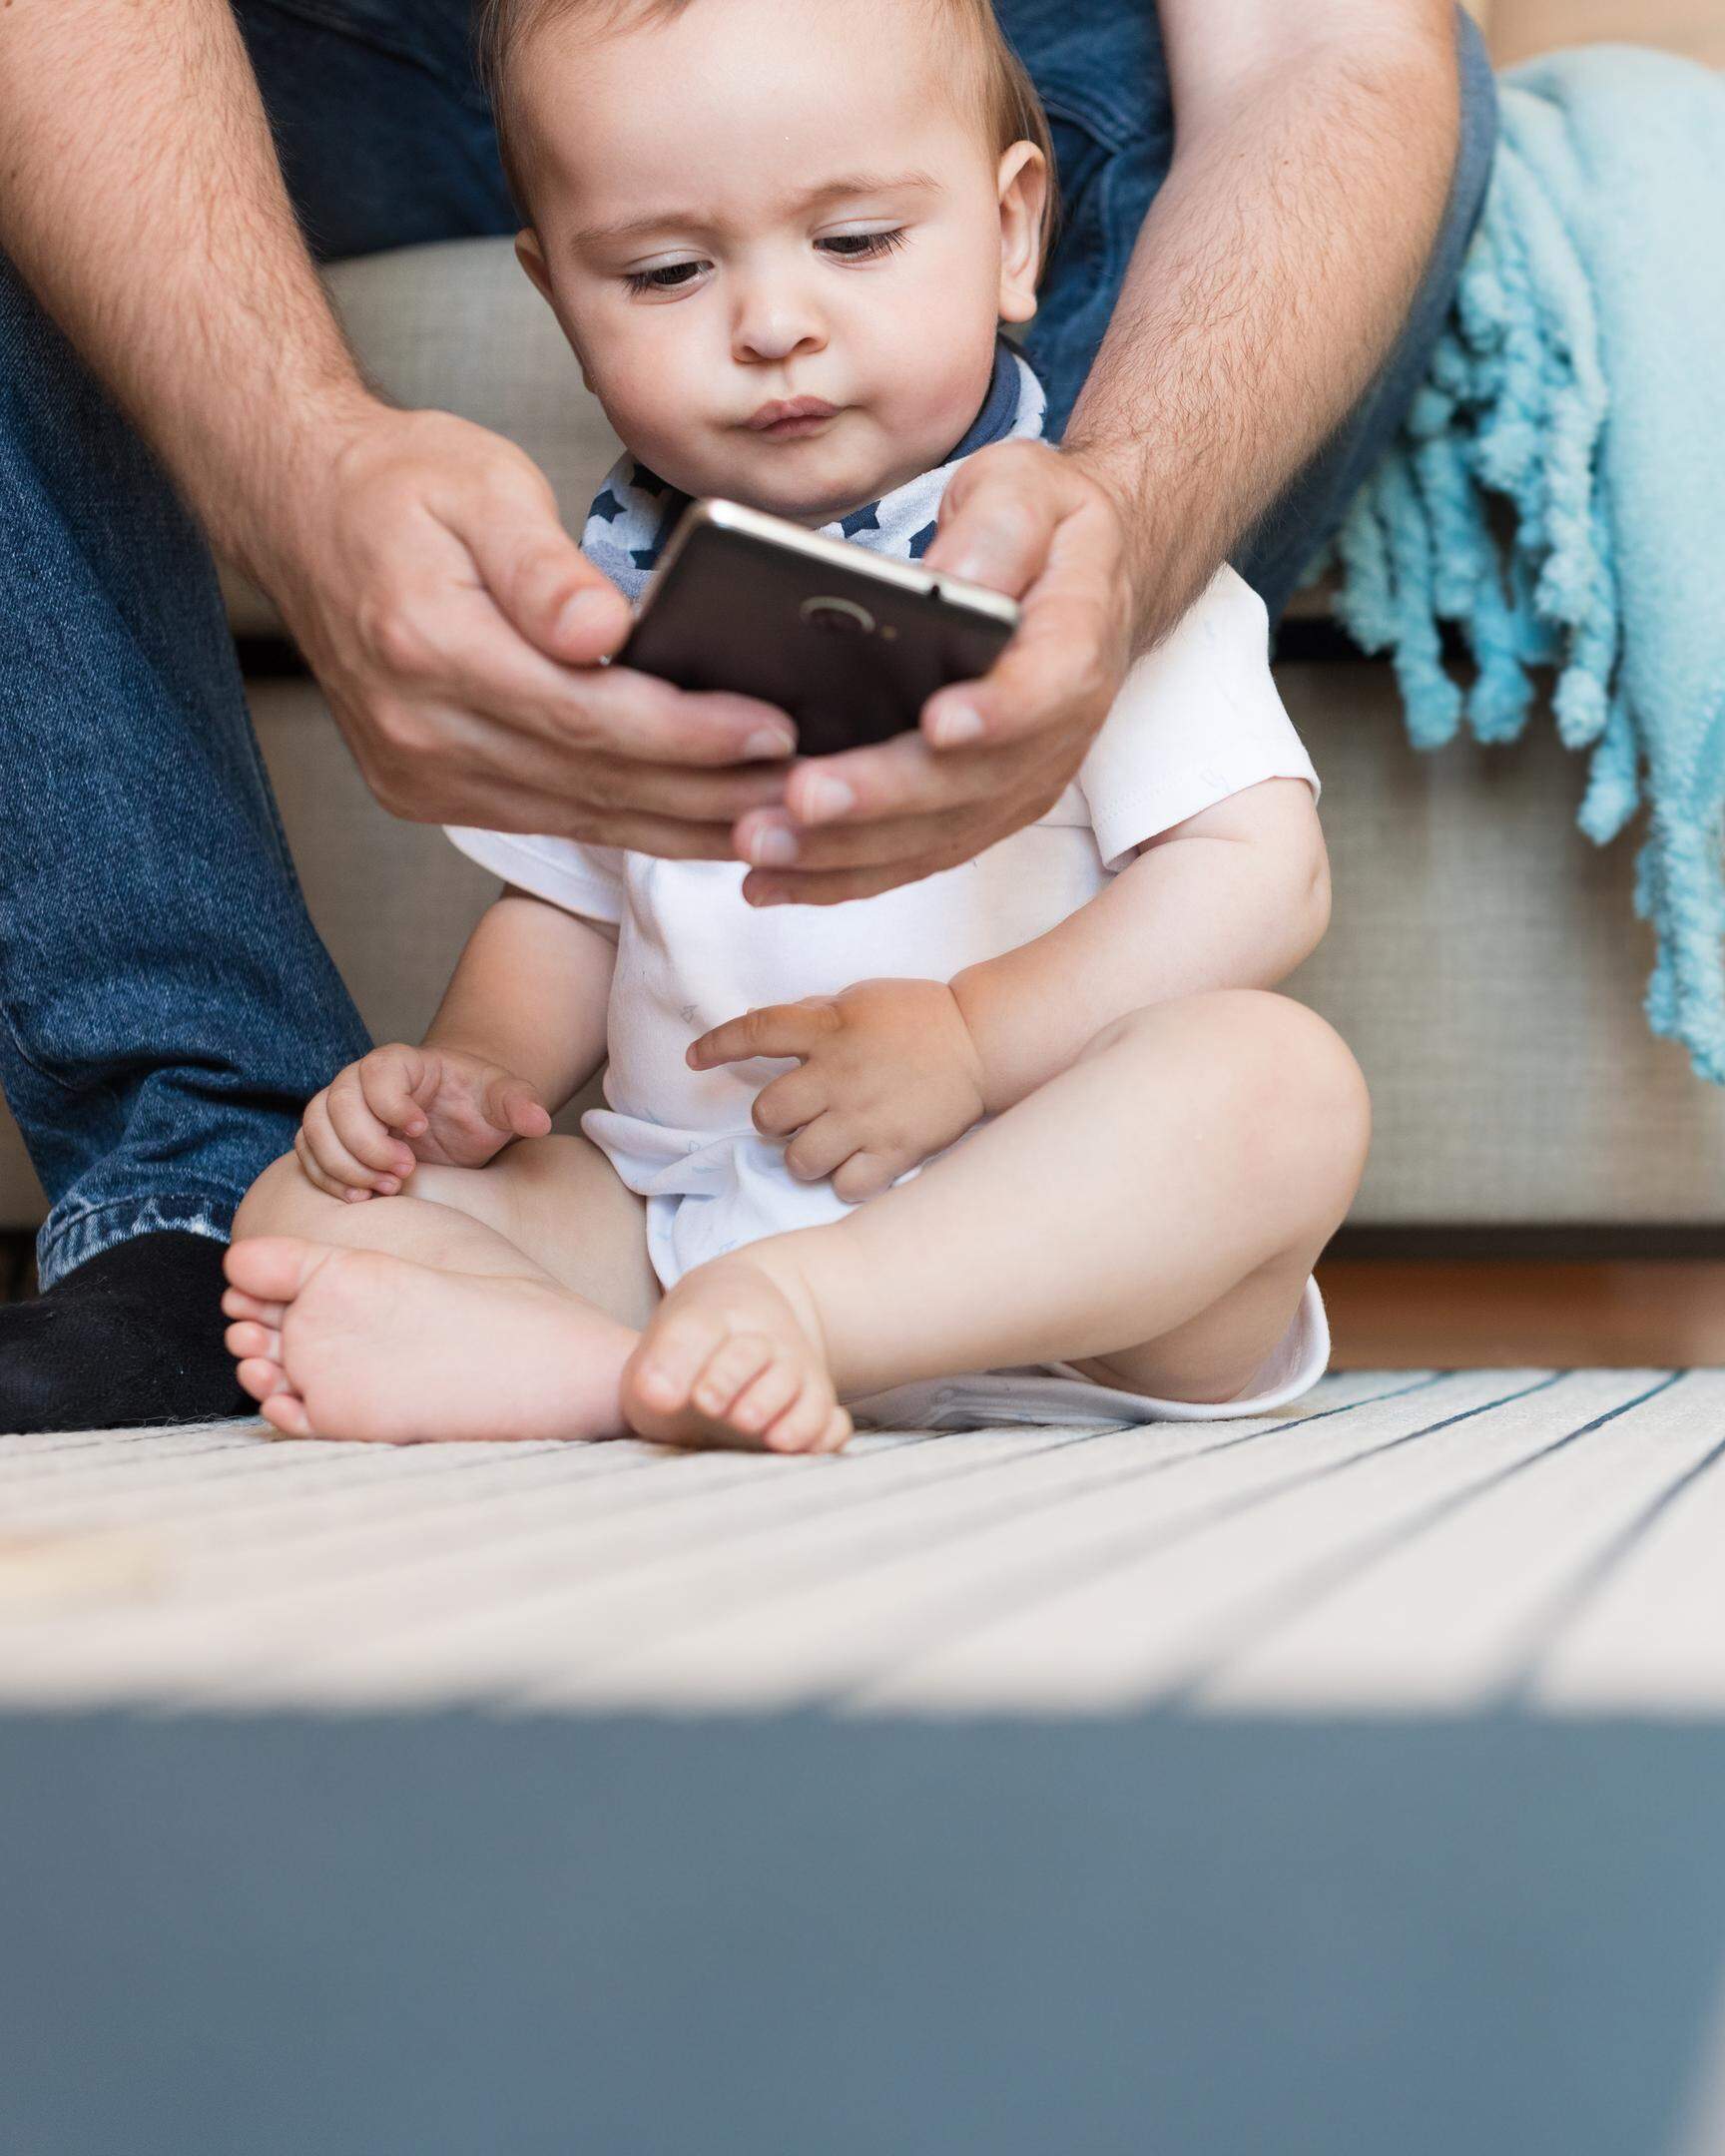 Viele Menschen verbringen zu viel Zeit an ihrem Smartphone. Mittlerweile zählen dazu auch immer häufiger Kleinkinder ab circa zwei Jahren.